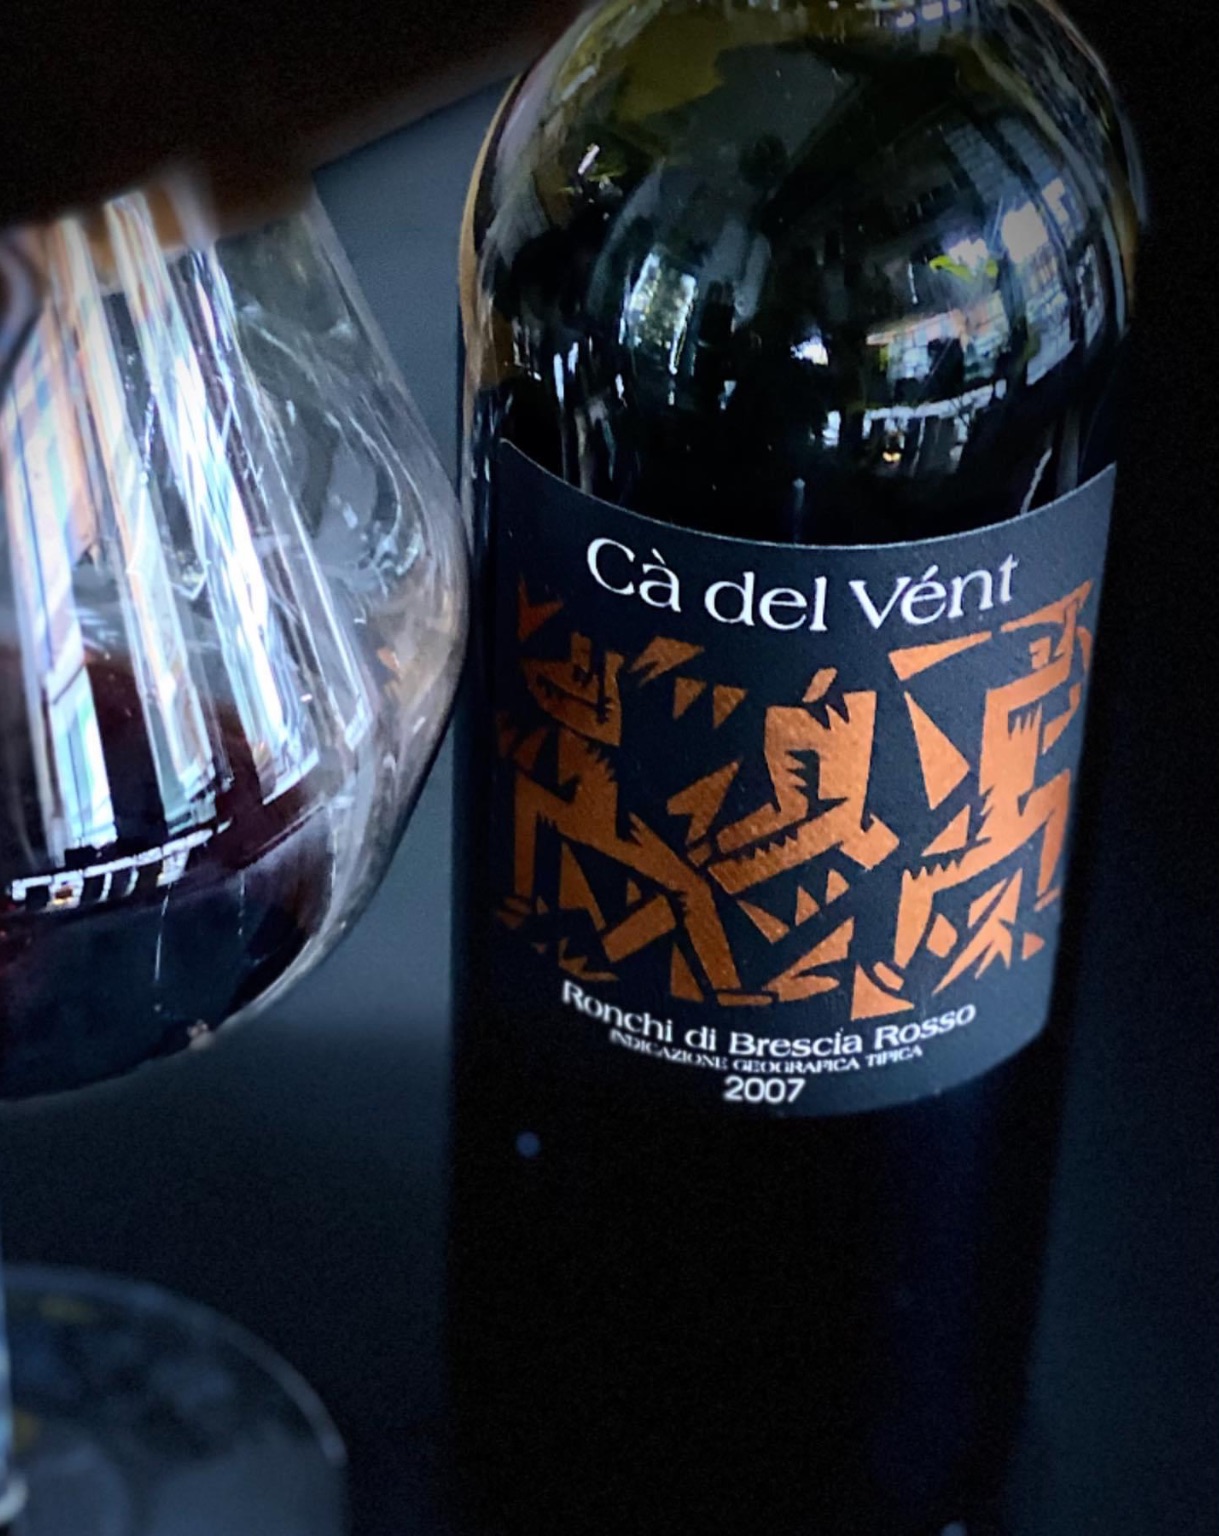 Quelli che Aqvagiusta di Treviglio, bel posto che emoziona, segnalano l’eccezionalita’ dei vini bresciani secondo la cantina Ca’ del Vent 